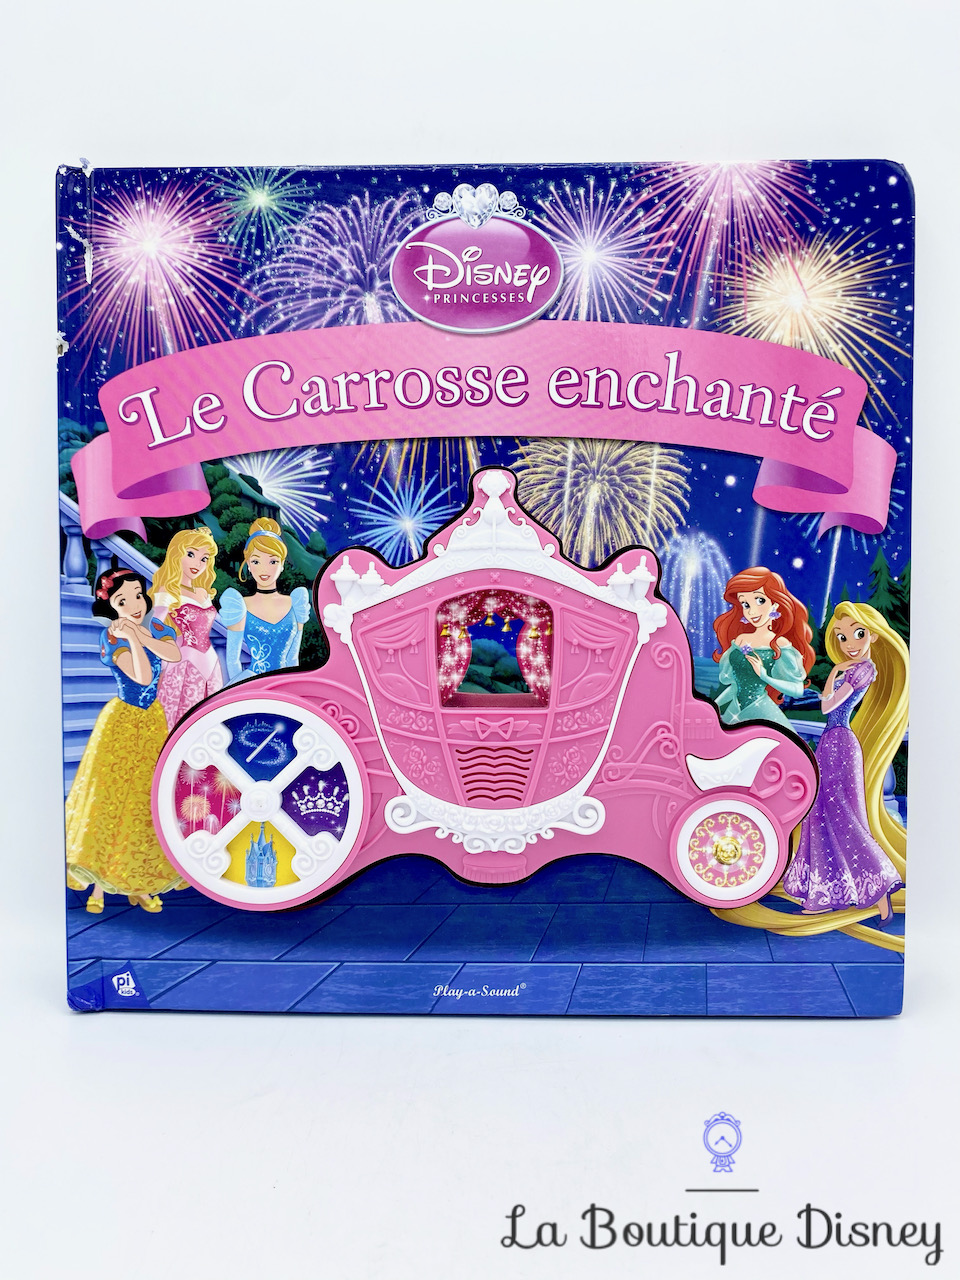 Livre musical Le Carrosse enchanté Disney Princesses Disney PI Kids Play a Sound chanson musique